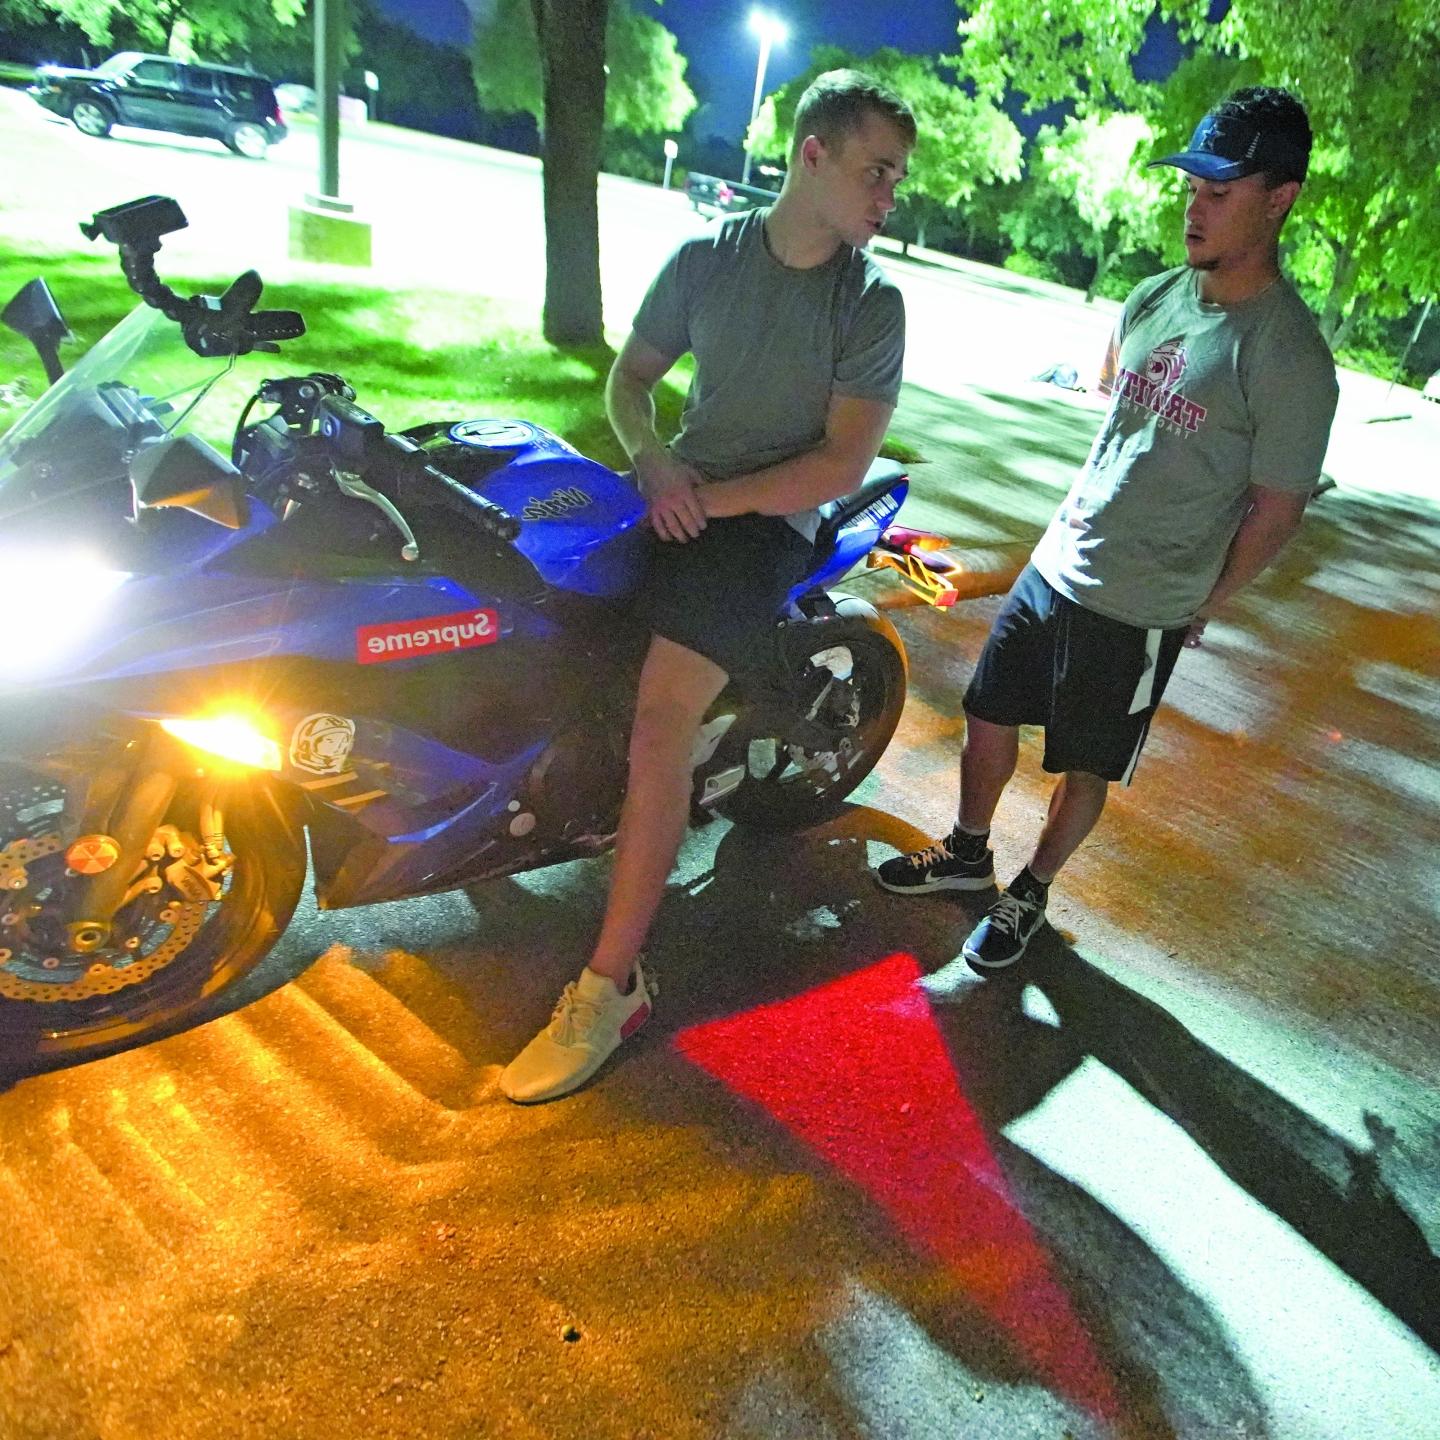 克里斯·斯图尔特和鲍比·马吉坐在一辆摩托车上，他们脚下的柏油路上投射着一个红色的转向灯.